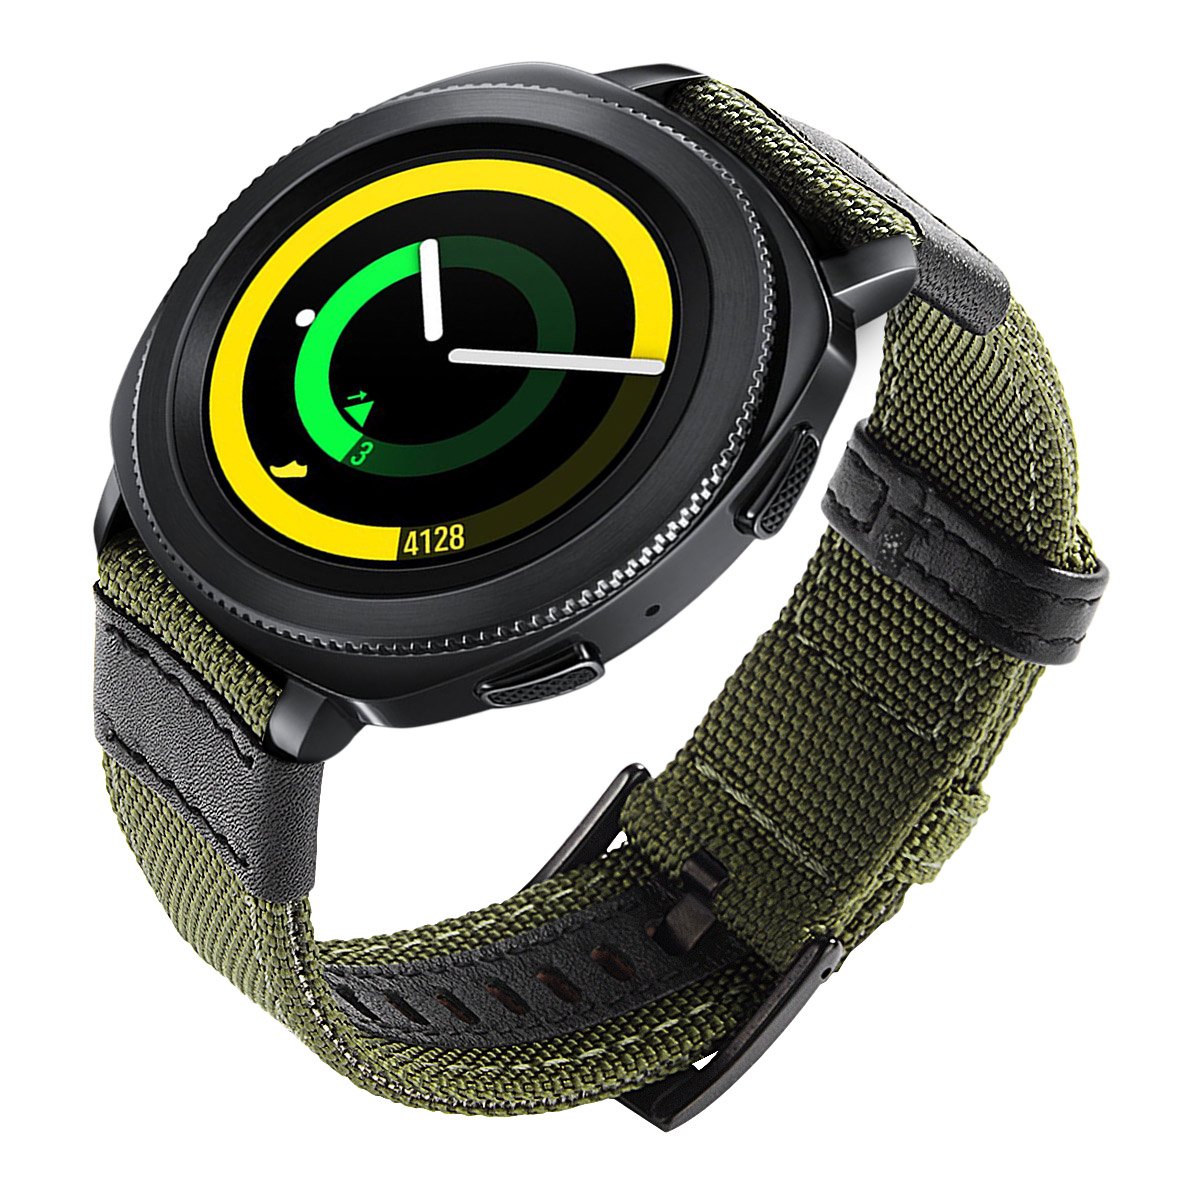 dây đồng hồ nylon 20mm dành cho đồng hồ Gear Active, Galaxy Watch 42mm, Gear Sport, Gear S2 Classic và các loại đồng hồ dùng dây chuẩn 20mm